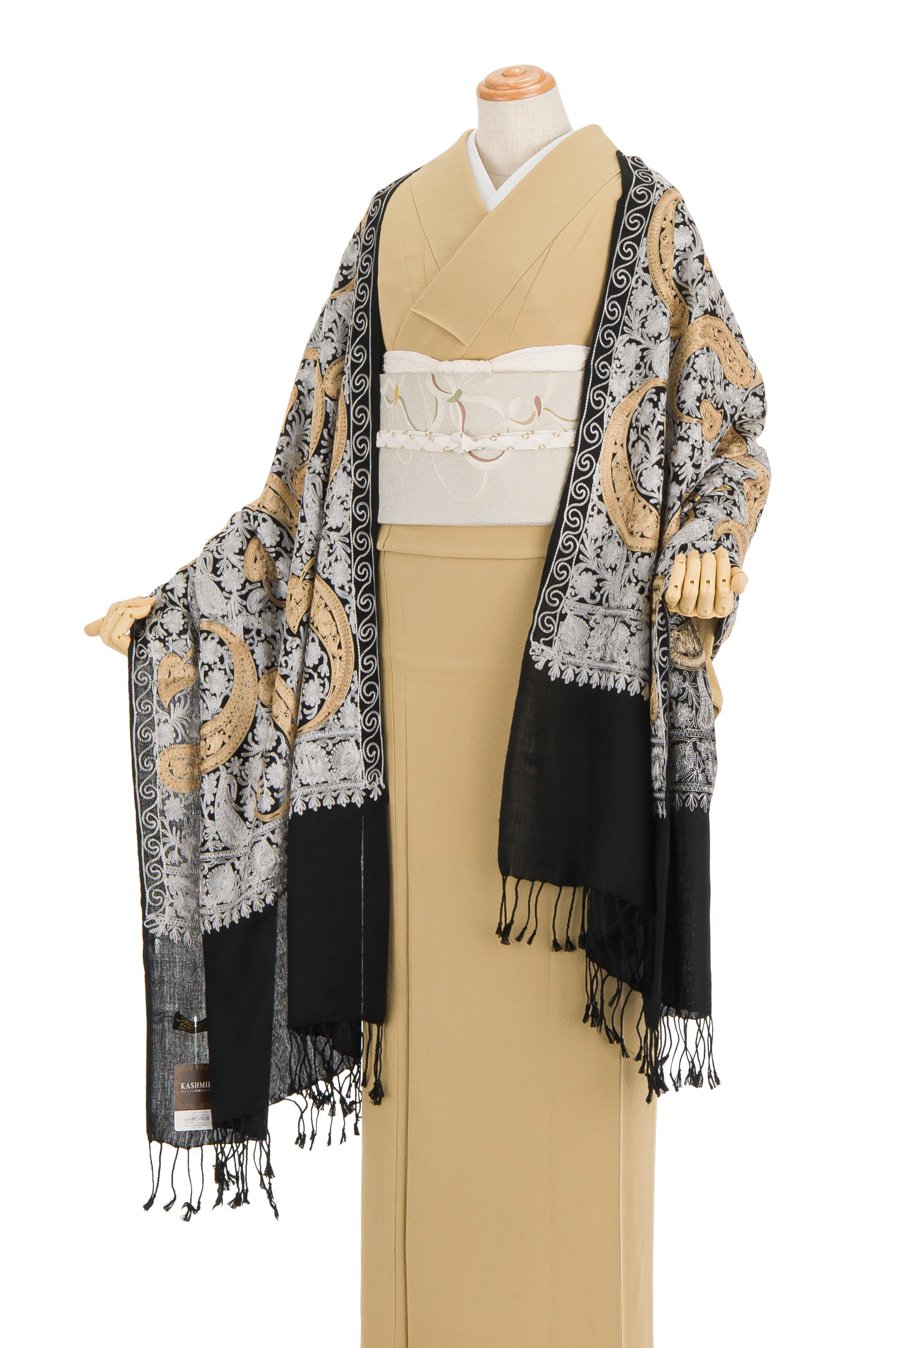 素材ウール新品 カシミール 刺繍ストール インド製 70×200 和装 洋装 ショール